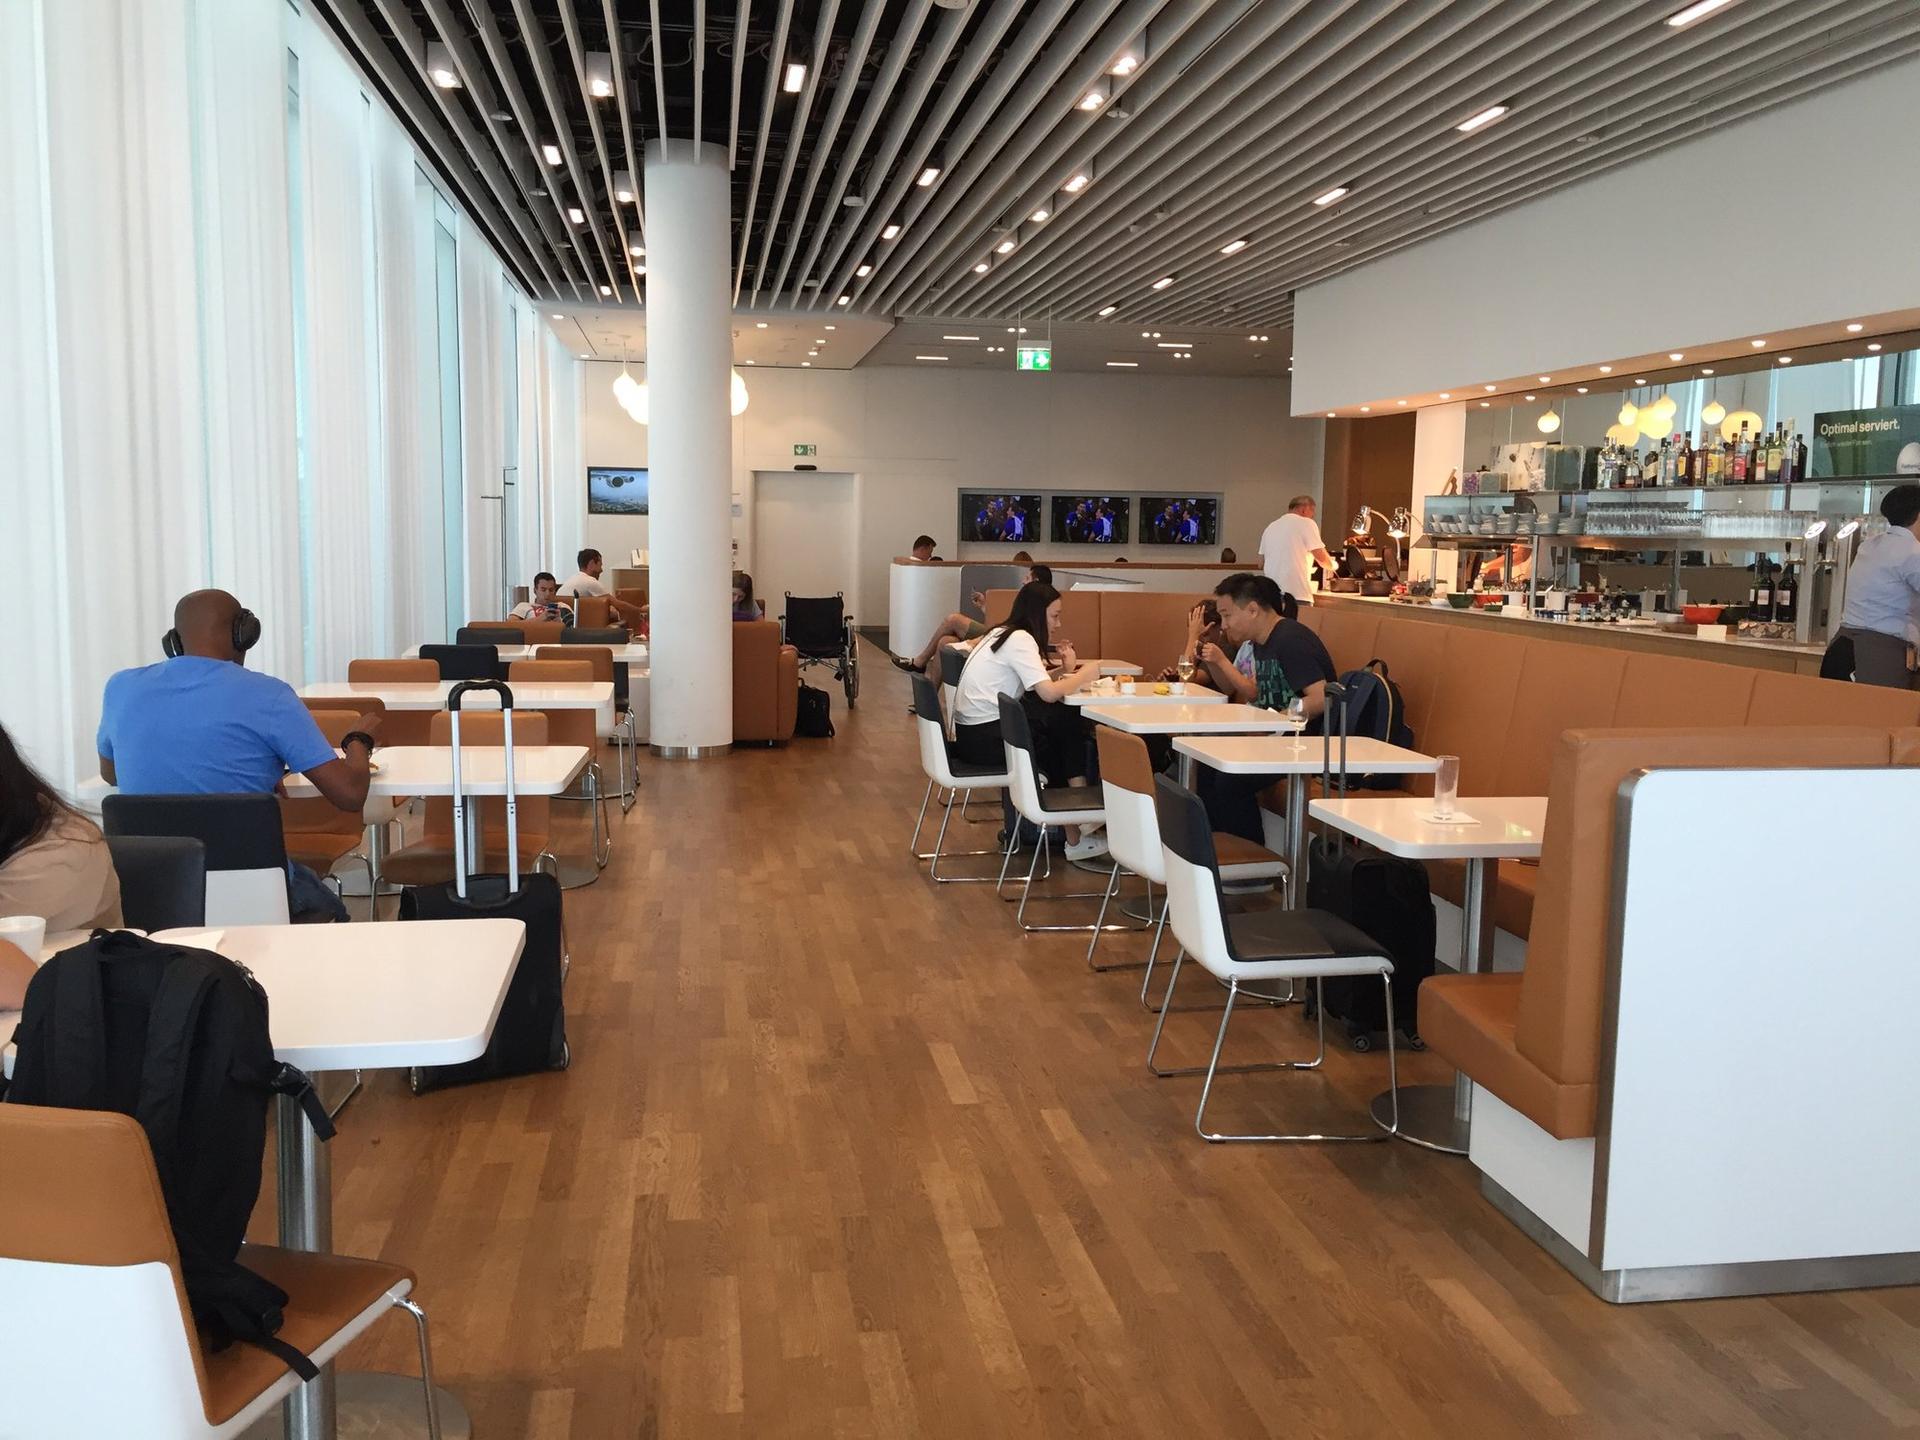 Lufthansa Business Lounge (Schengen) image 6 of 13